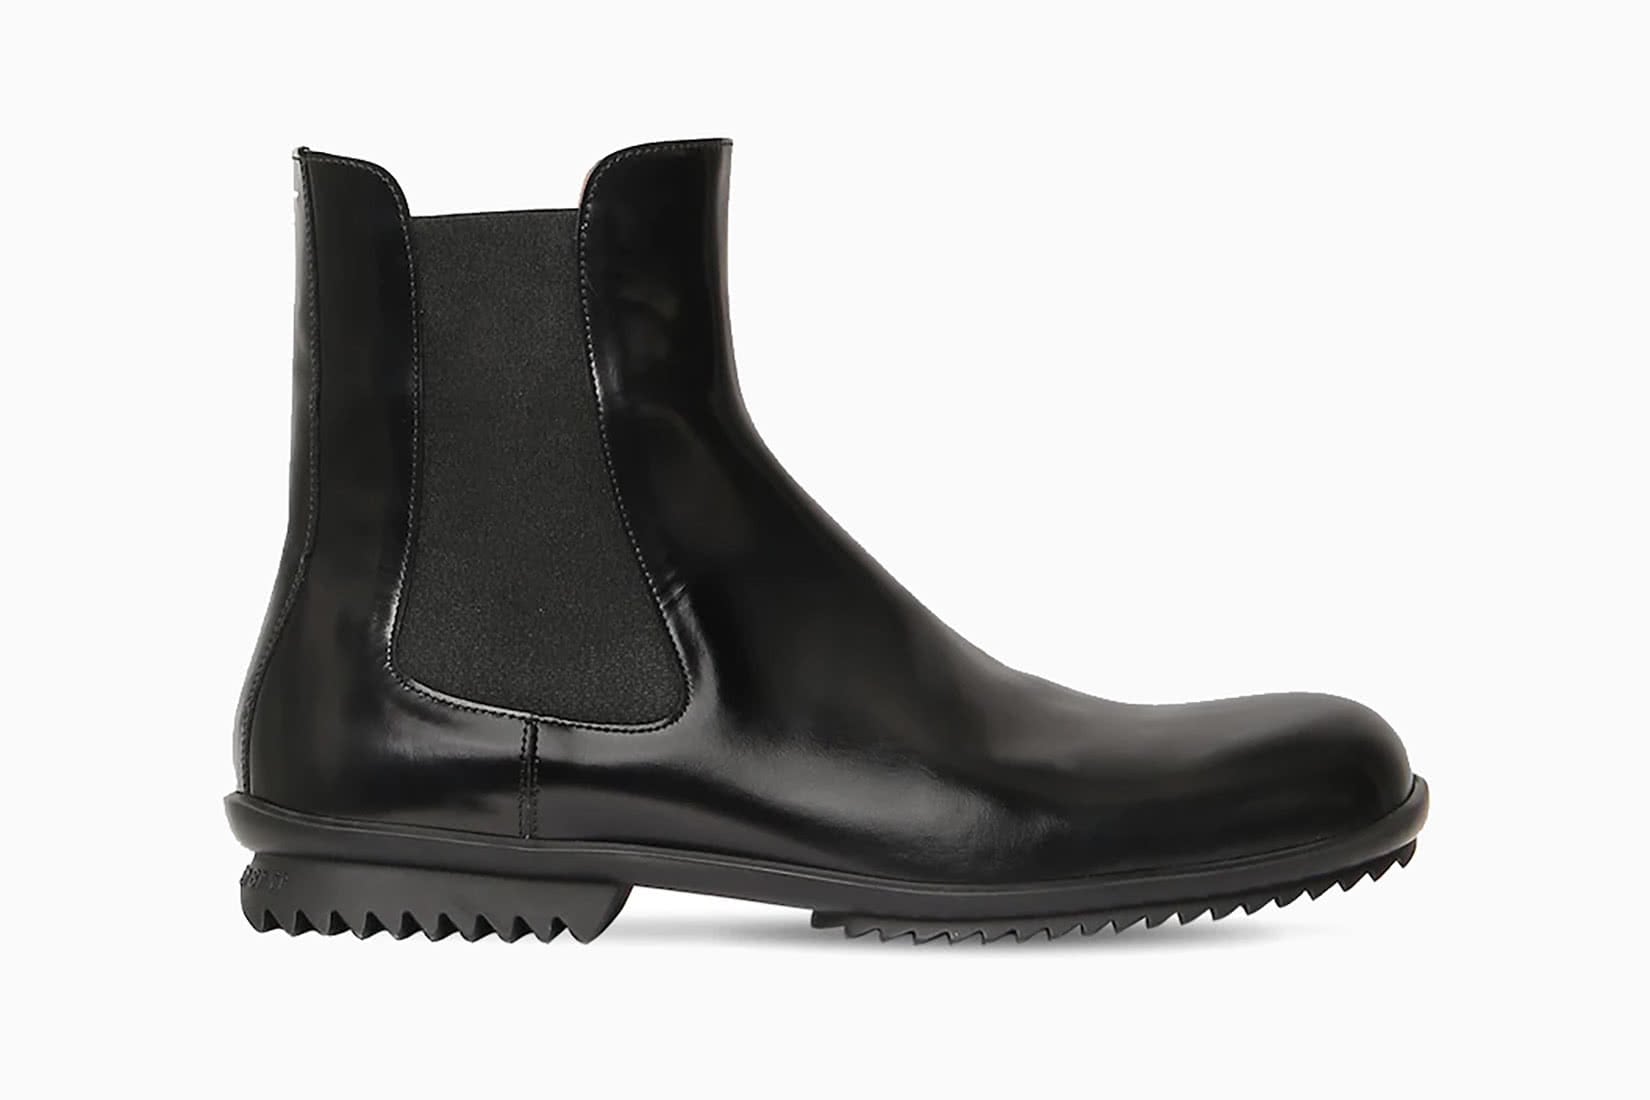 most fashionable Chelsea boots men maison margiela review - Luxe Digital